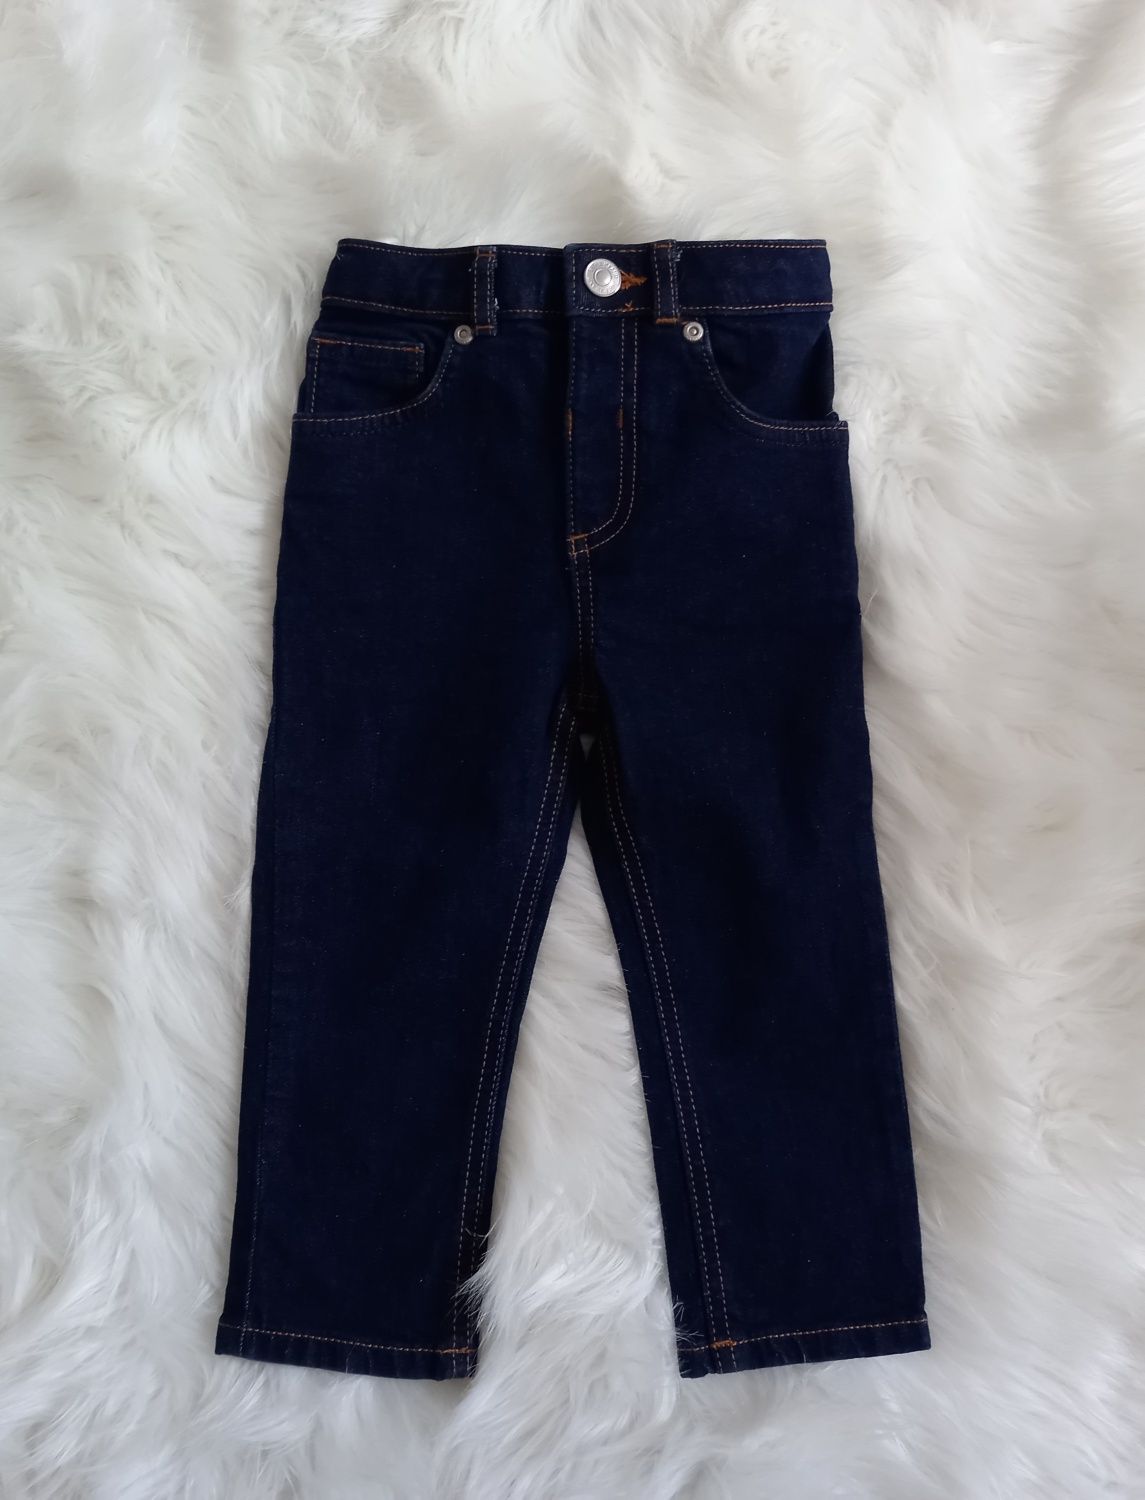 Spodnie jeansy nowe rozmiar 86/92